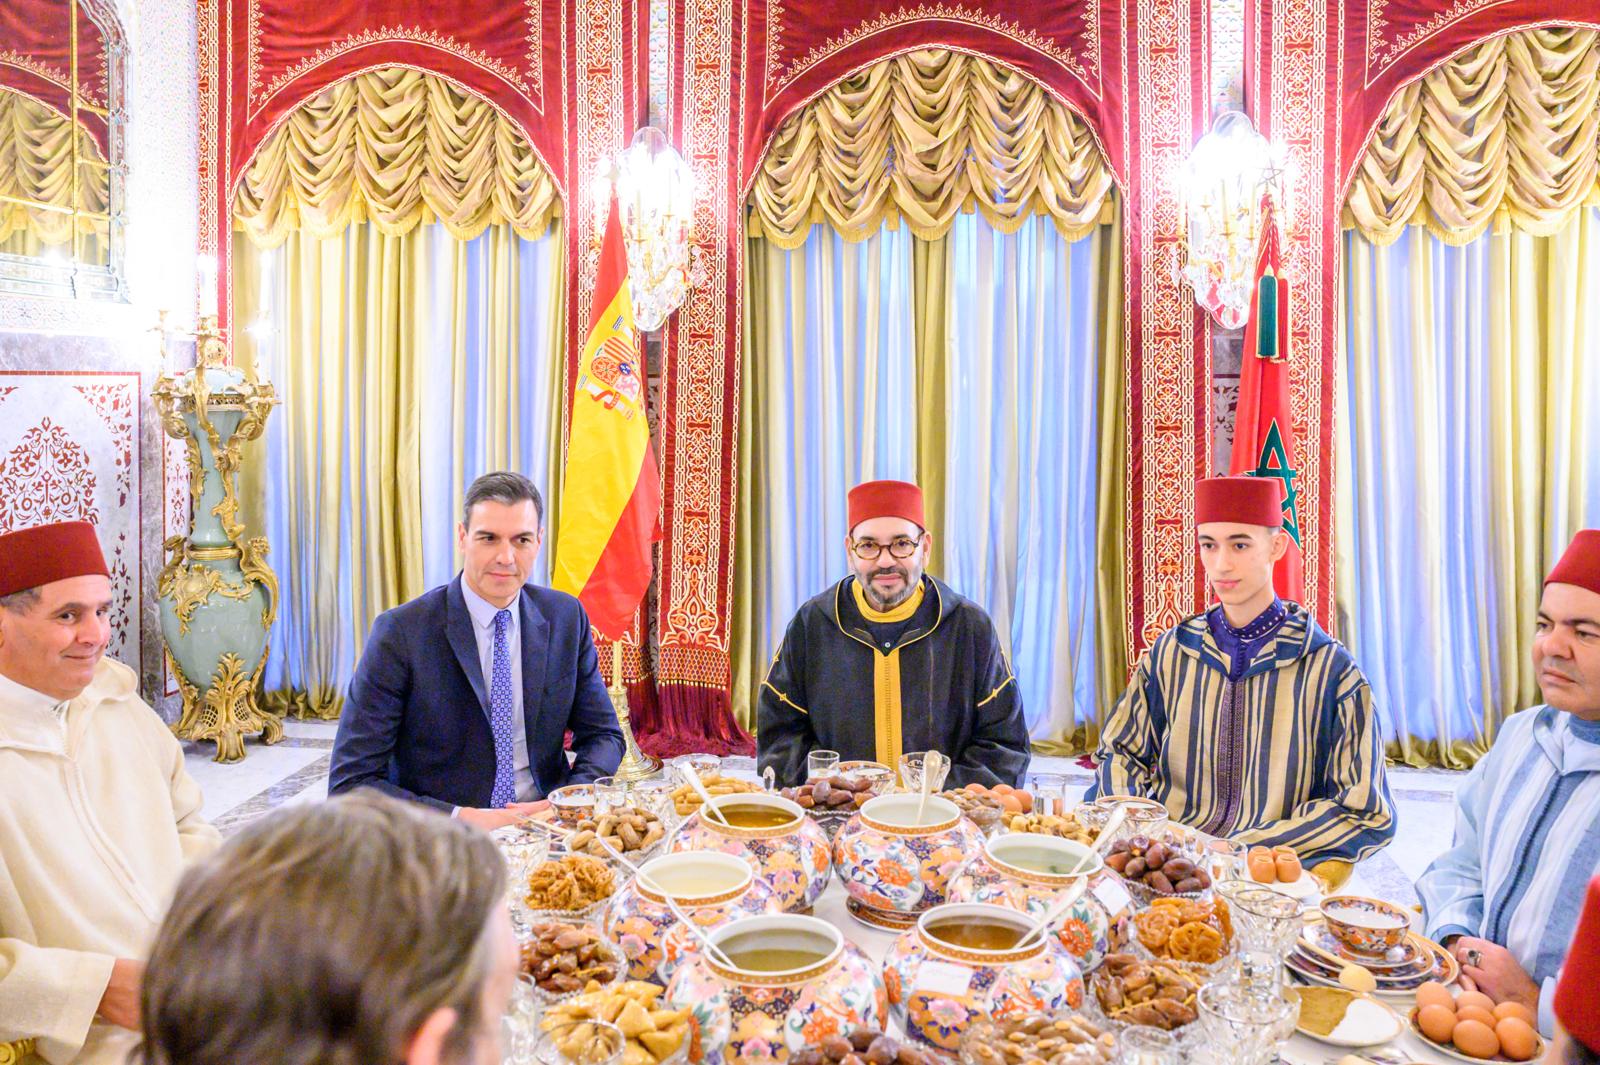  SM el Rey ofrece un iftar en honor de Pedro Sánchez presidente del gobierno español